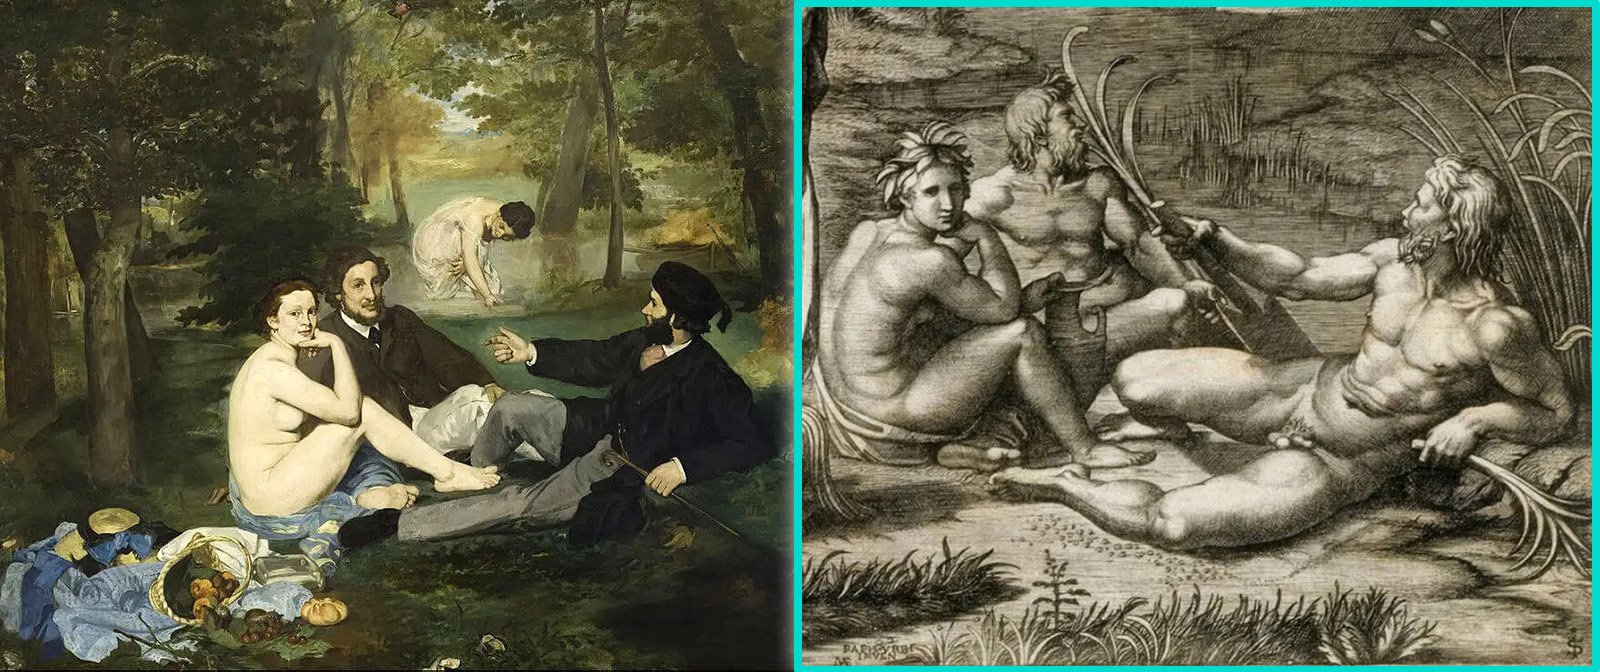 Что так раздражало публику в картине Эдуарда Мане «Завтрак на траве», из-за чего на неё не рекомендовали смотреть «добропорядочным дамам»?